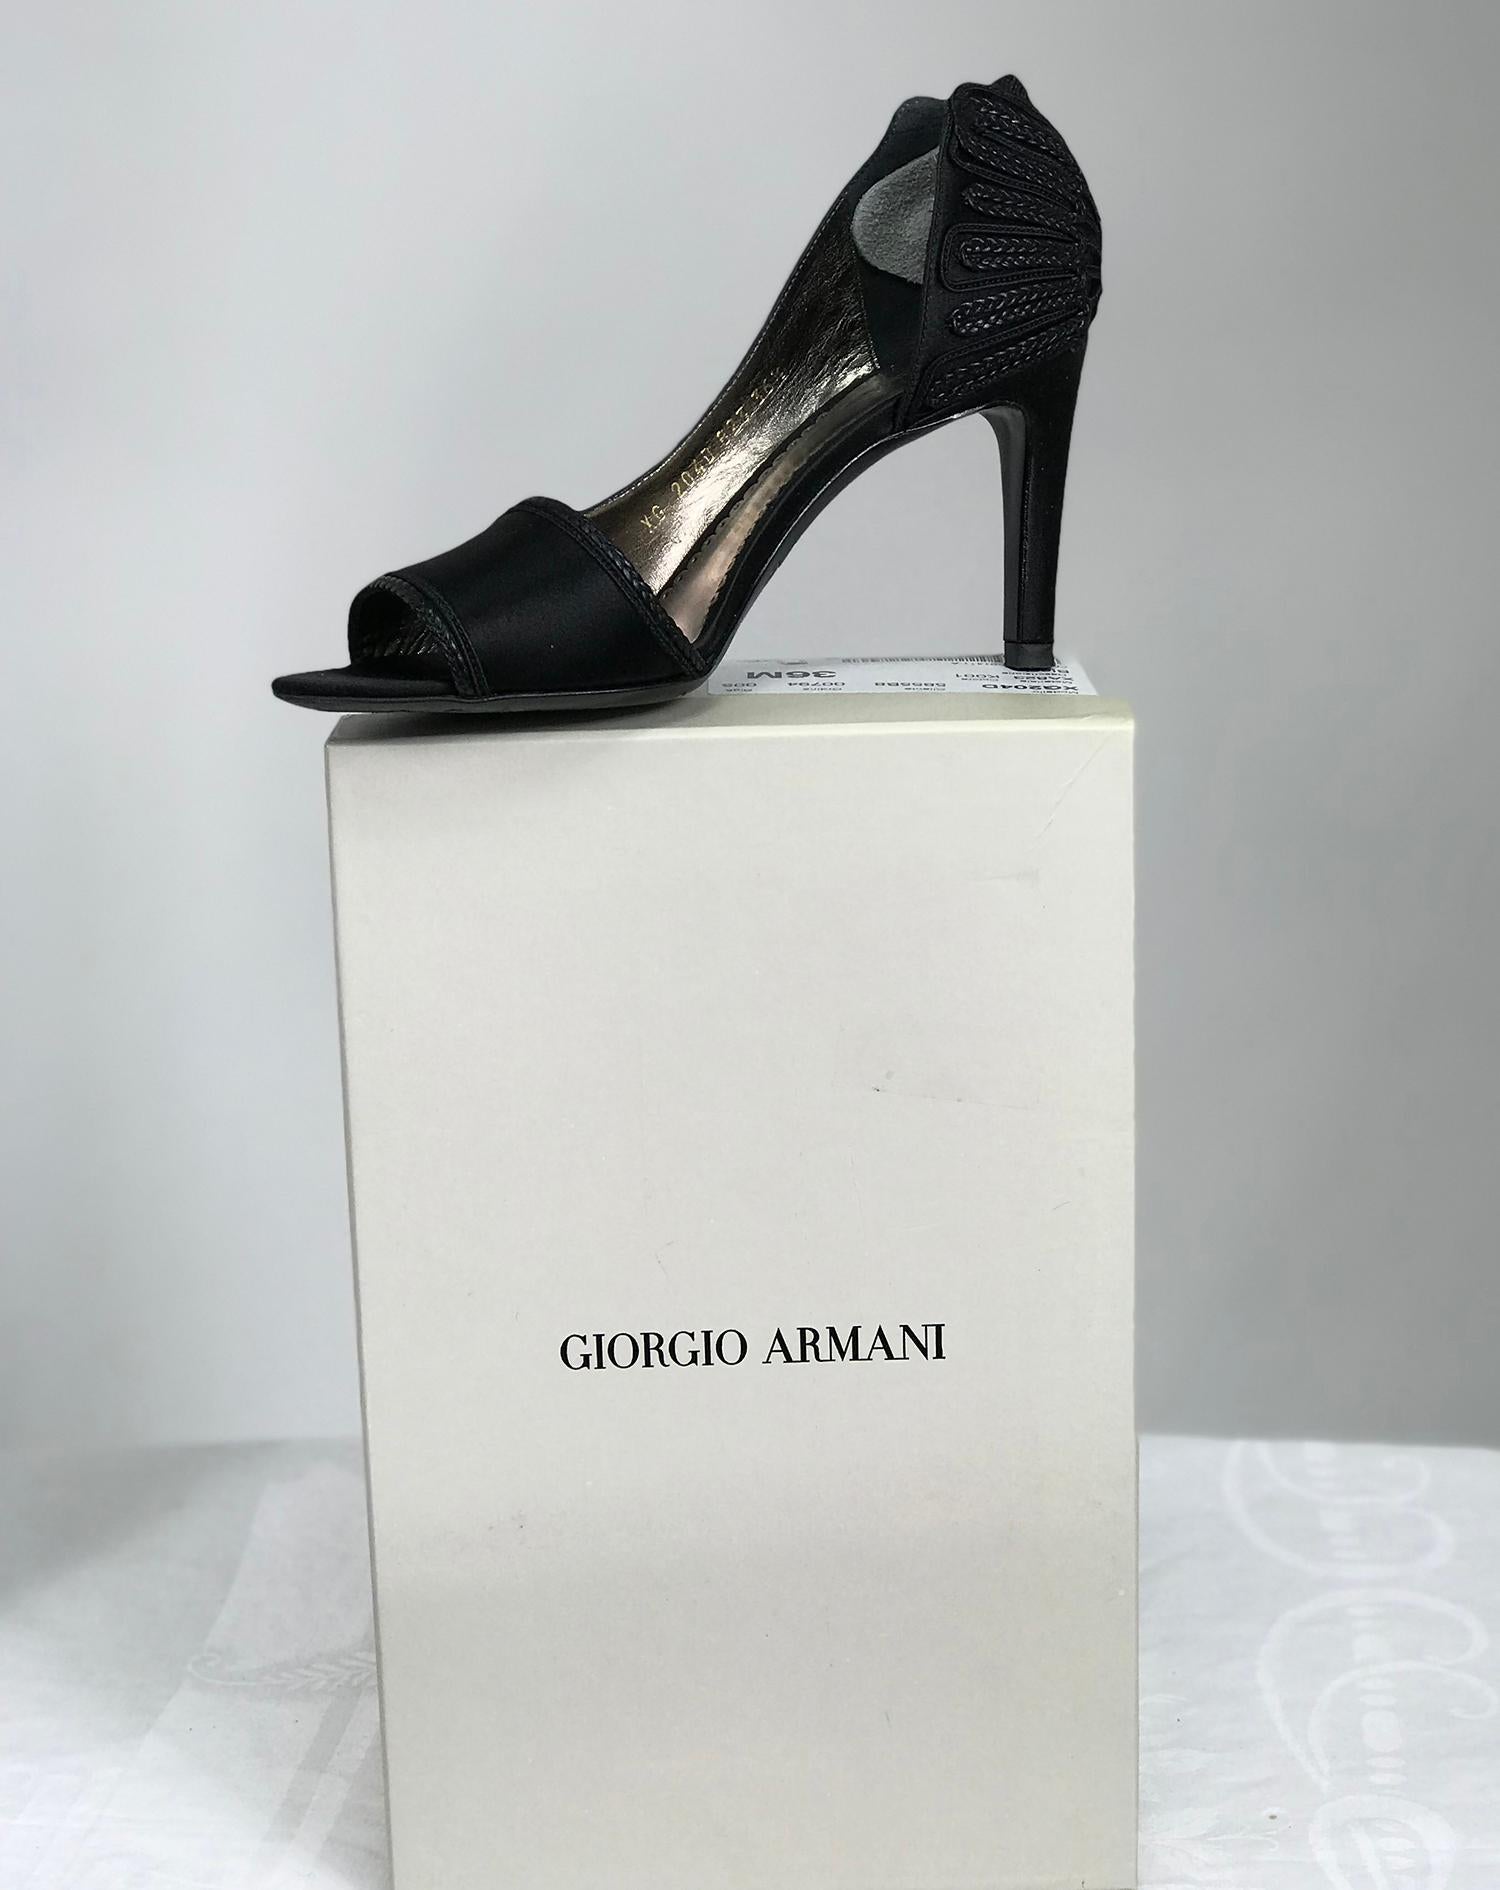 Giorgio Armani schwarzer Saitn d'orsay Pumps mit hohem Absatz und Passementerie-Detail an der Ferse hinten, 36 M.  3 1/2 Zoll Absätze. Diese schönen Schuhe haben vorne ein schmales Bortenband und hinten sind sie wie Flügel mit durchbrochener Arbeit